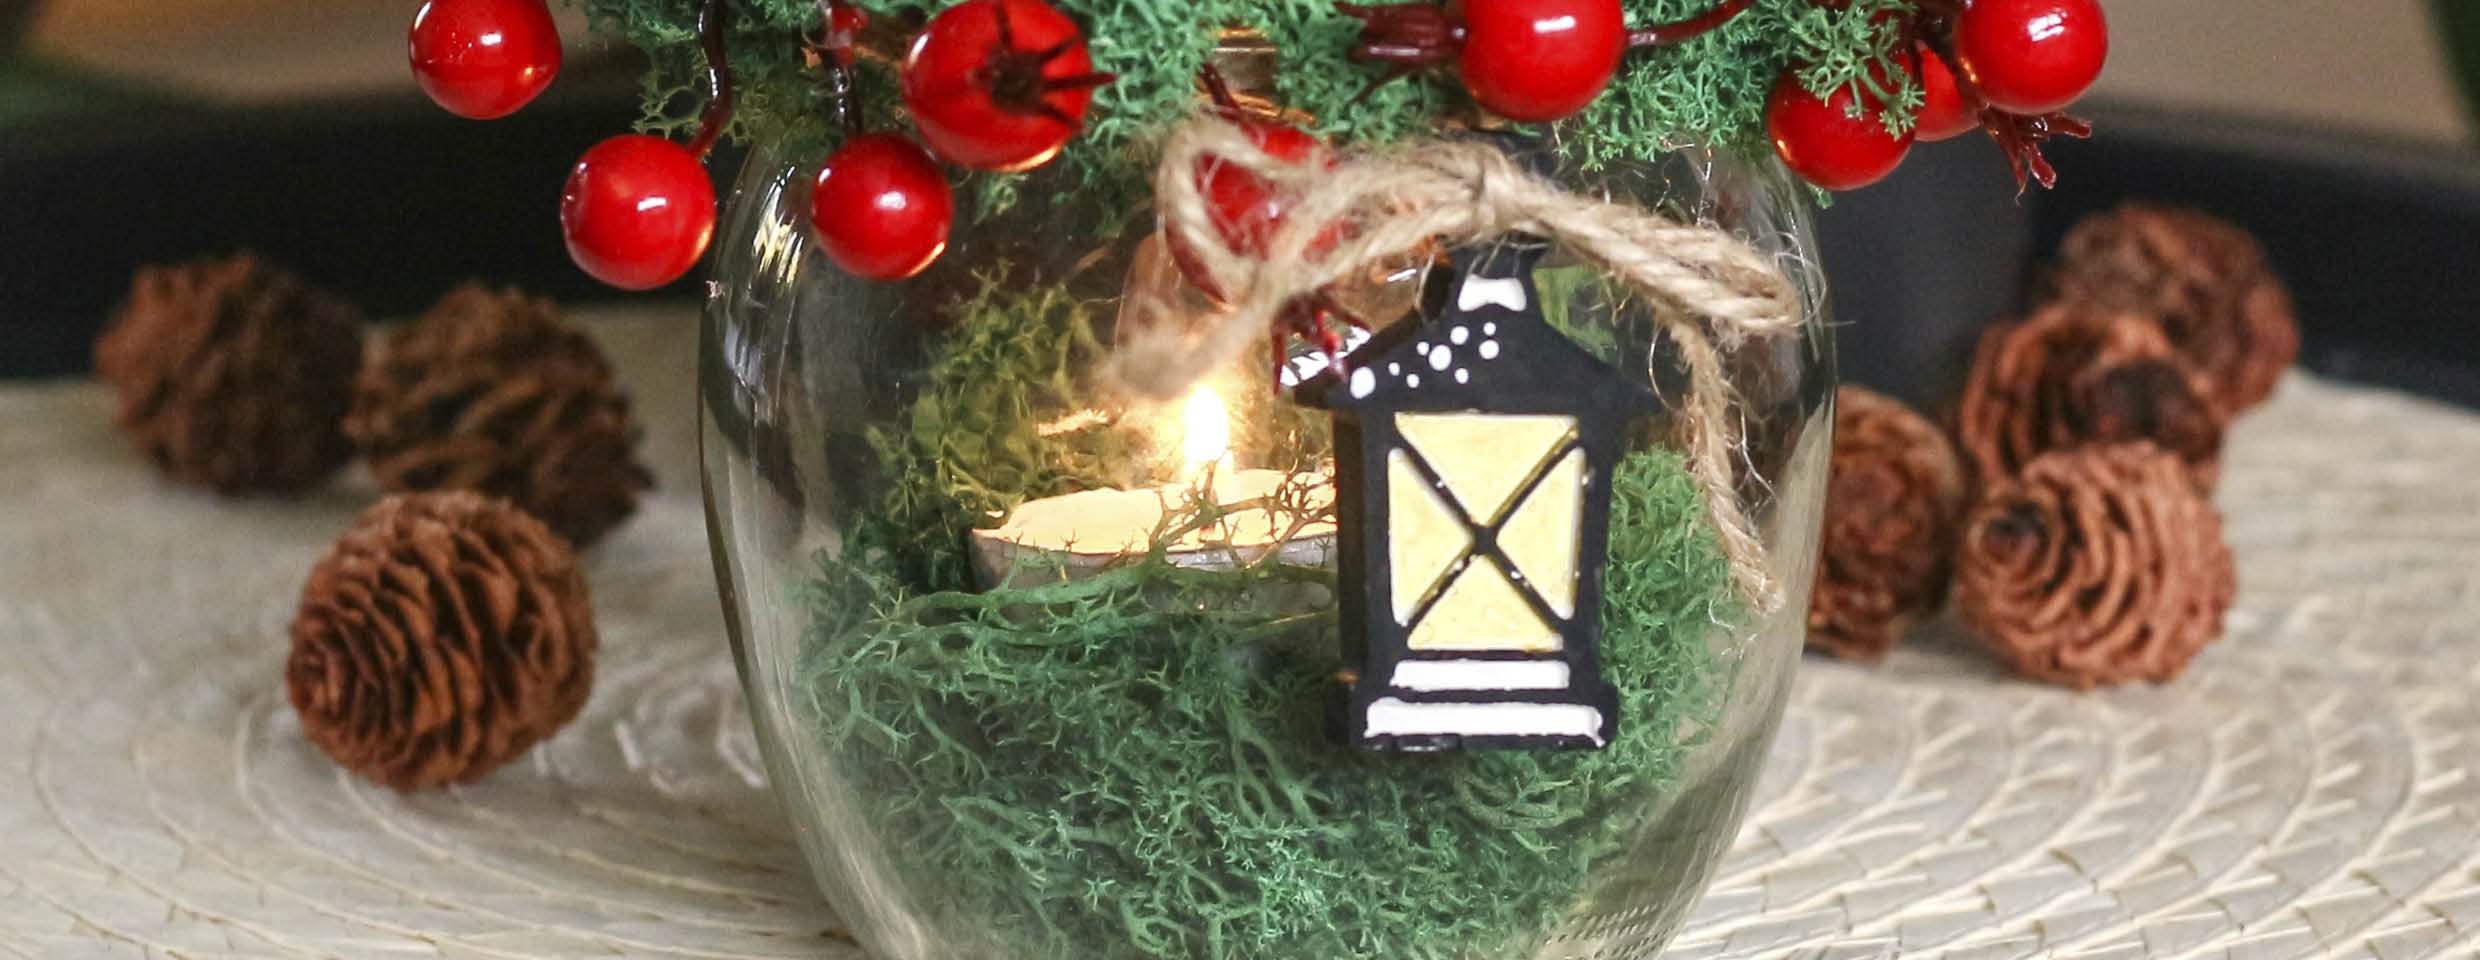 Vytvořte sváteční atmosféru sklenicí plnou vánočních dekorací